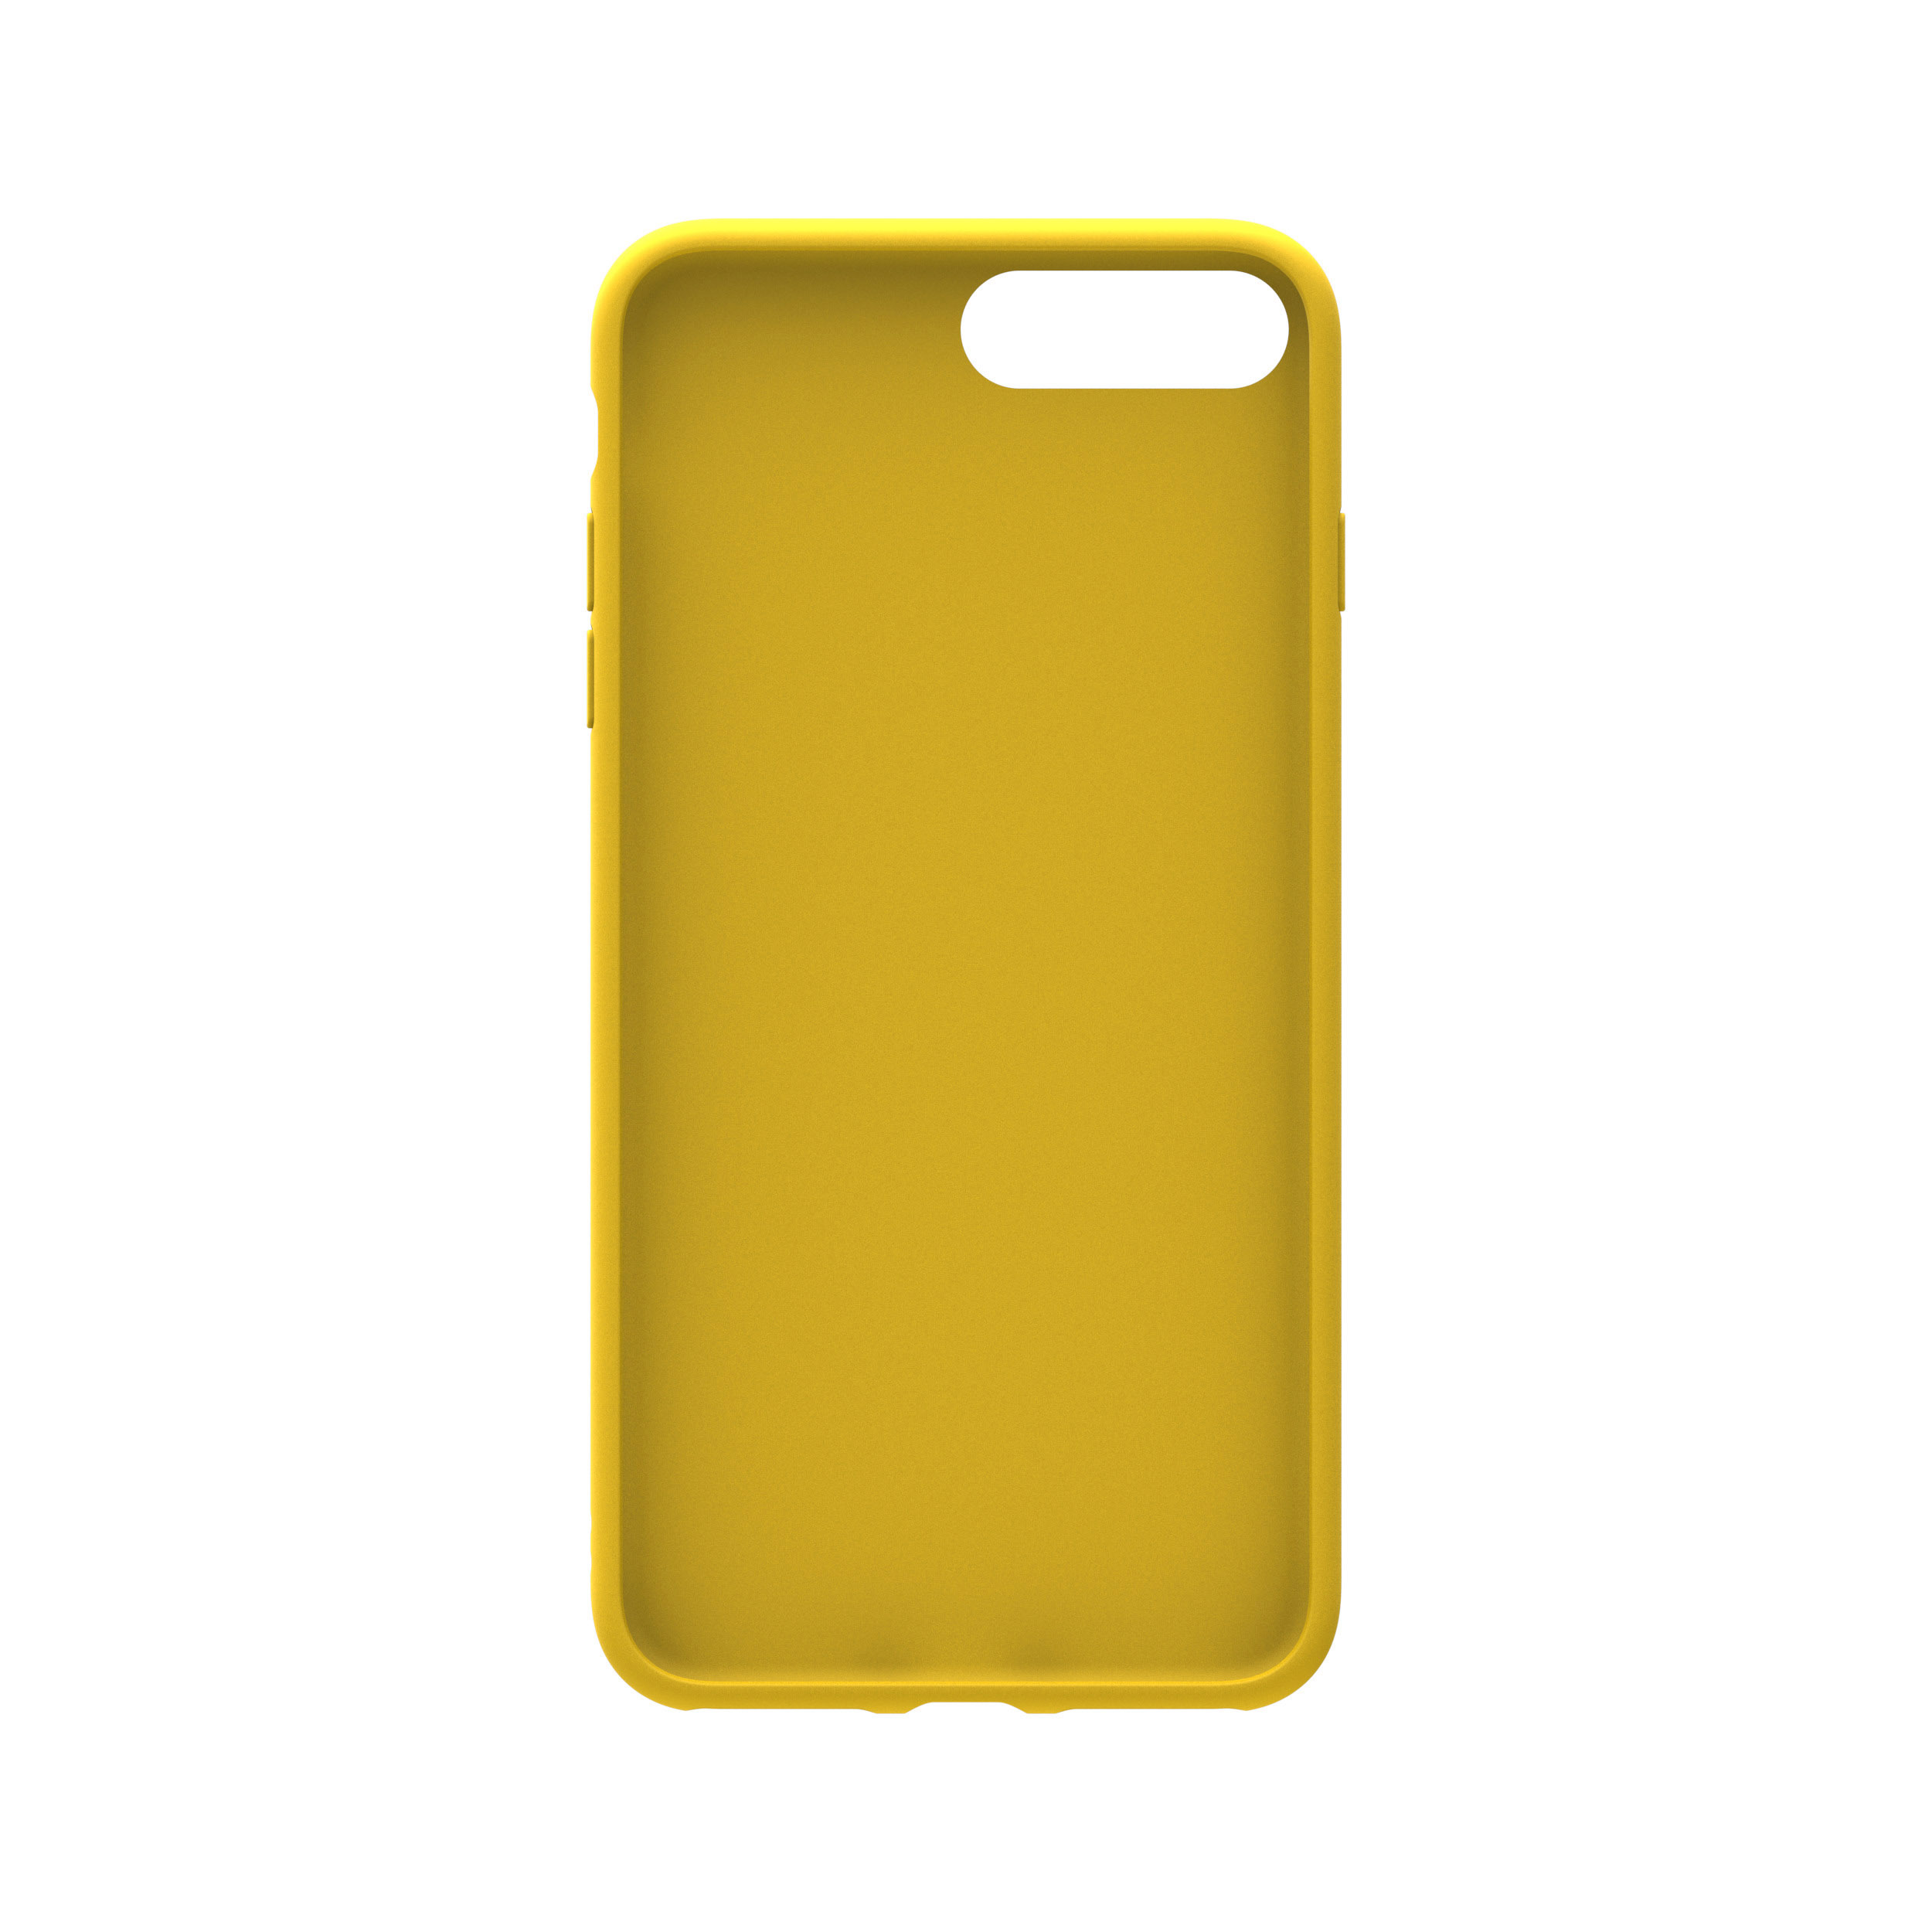 iPhone Gelb Plus, Backcover, OR 7 Plus, Moulded iPhone 8 Plus, ADIDAS 6 Case, Apple, iPhone ORIGINALS